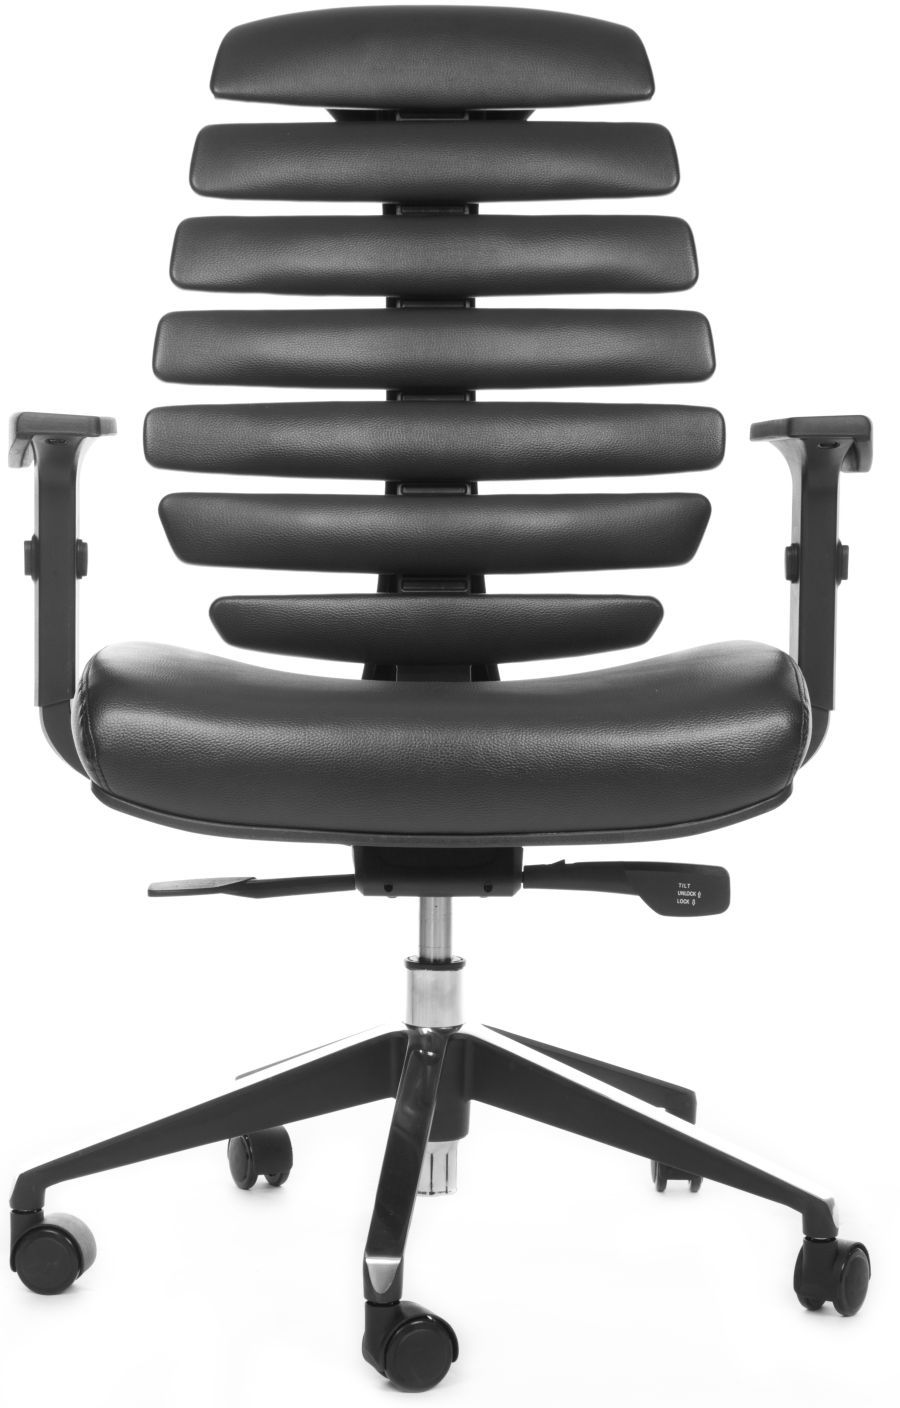 MERCURY kancelárska stolička FISH BONES čierny plast, čierna koženka PU580165